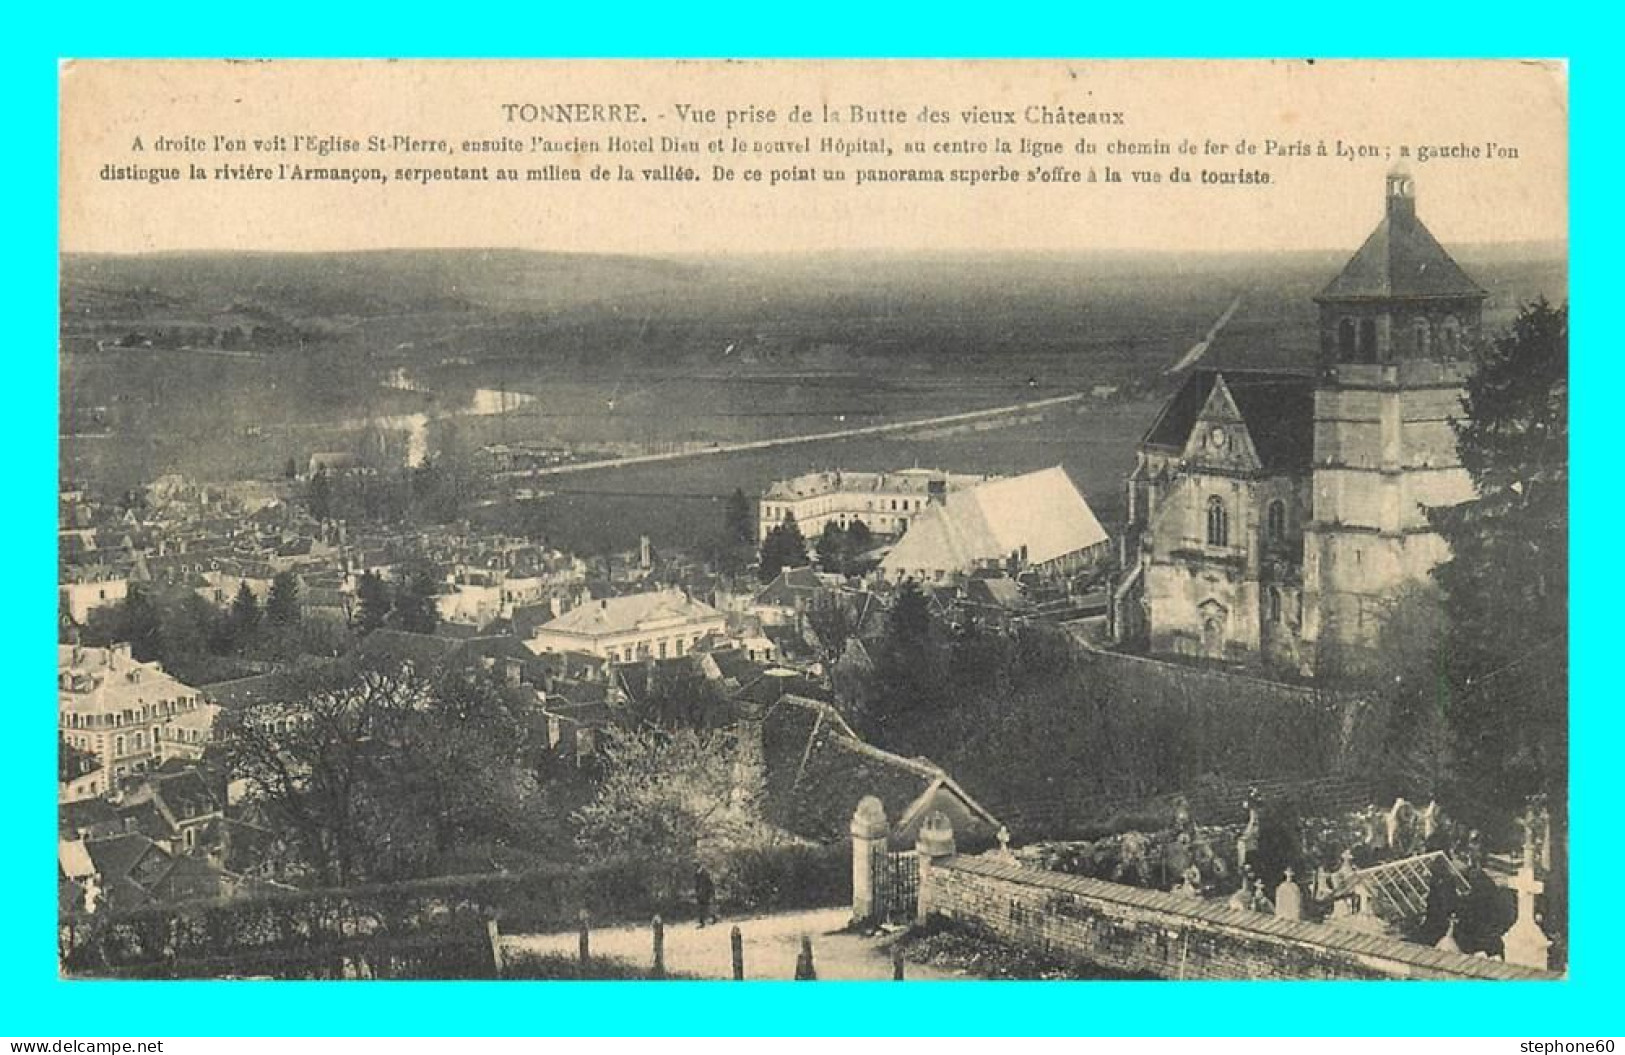 A837 / 085 89 - TONNERRE Vue Prise De La Butte Des Vieux Chateau - Tonnerre